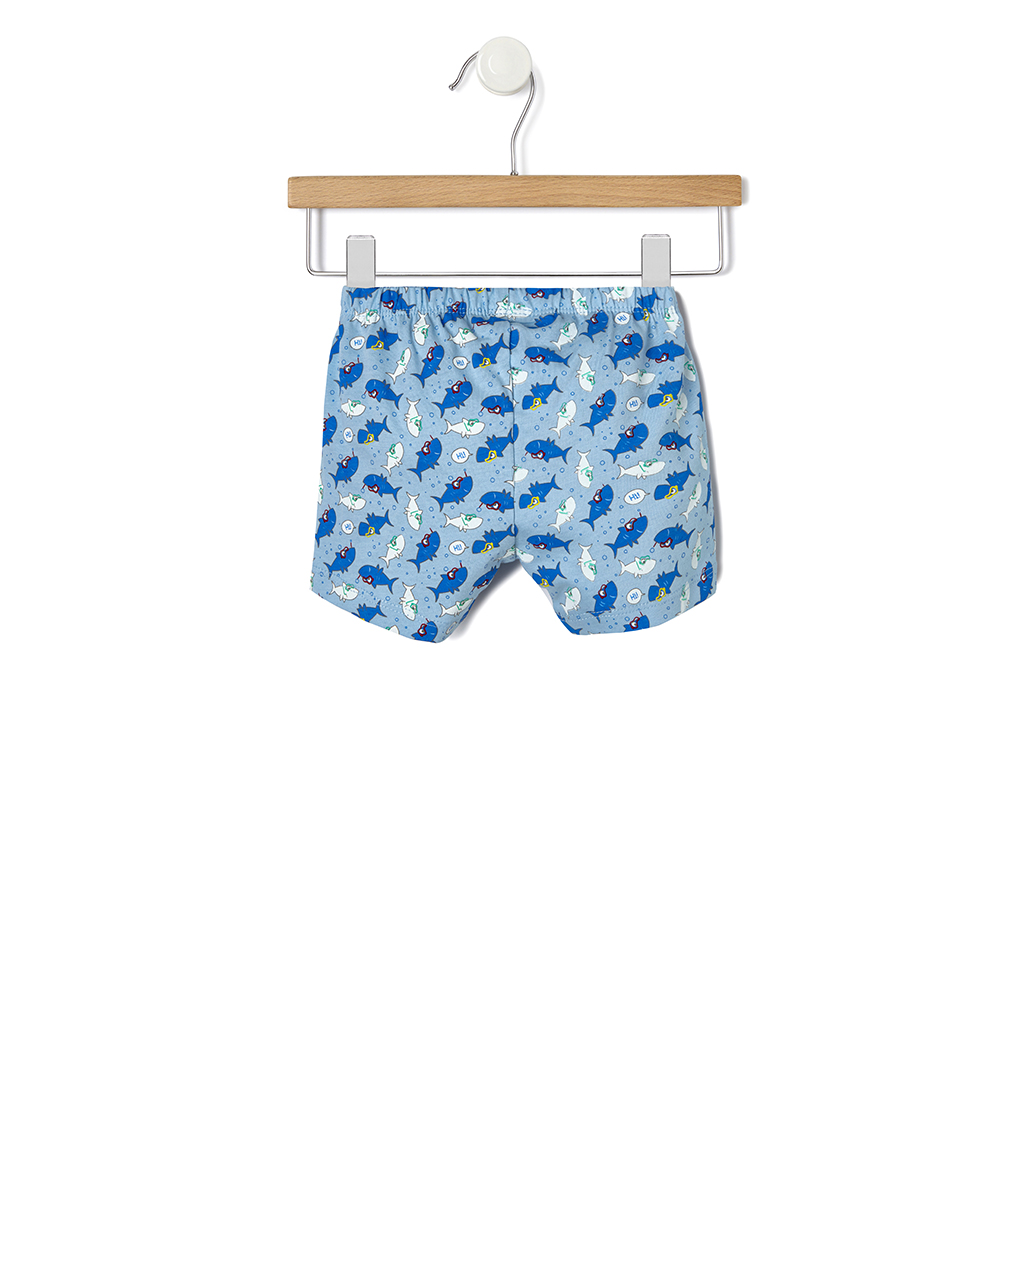 σετ t-shirt και σορτς με καρχαρίες για αγόρι - Prénatal